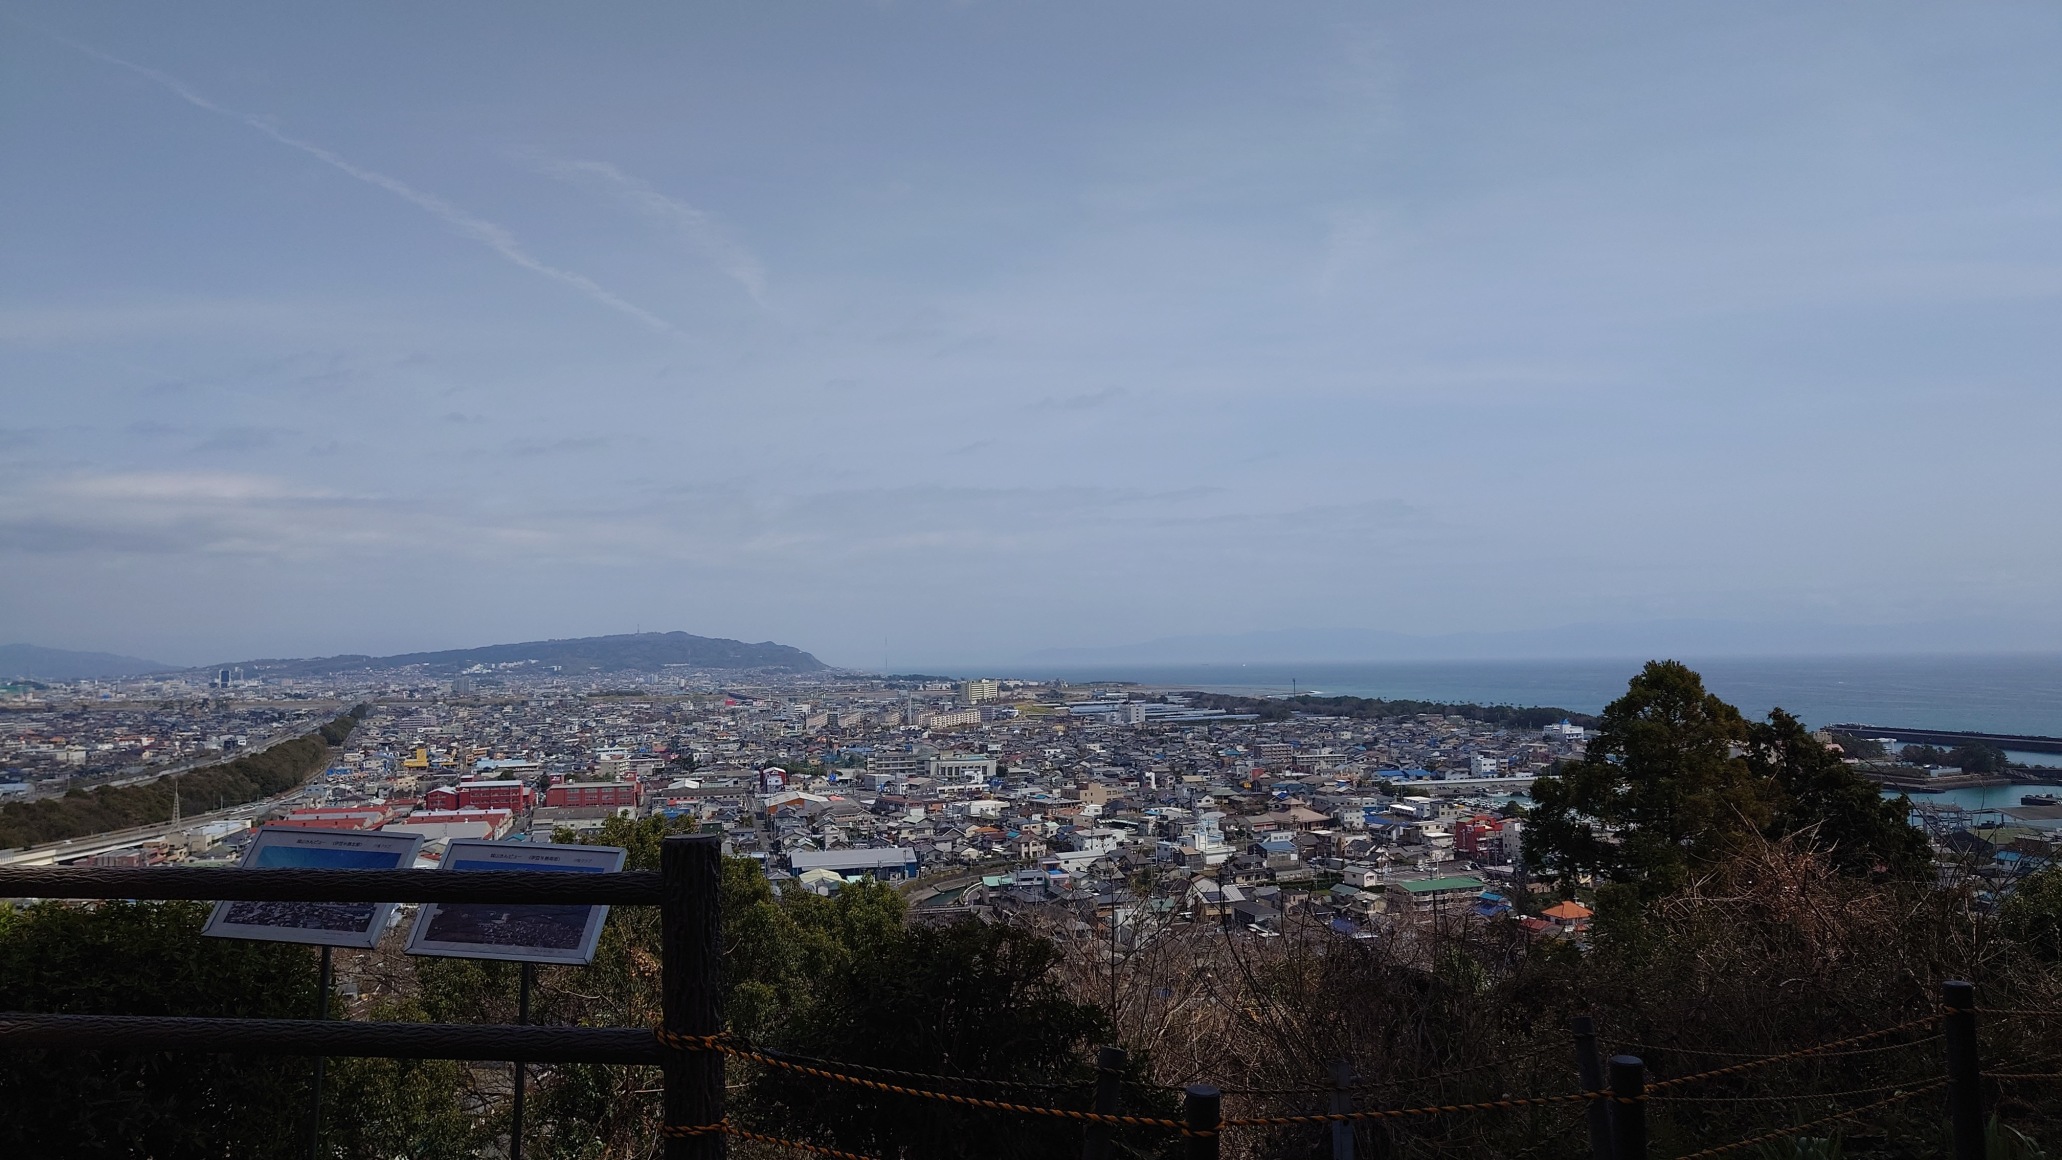 展望台から戸崎城方面を望む